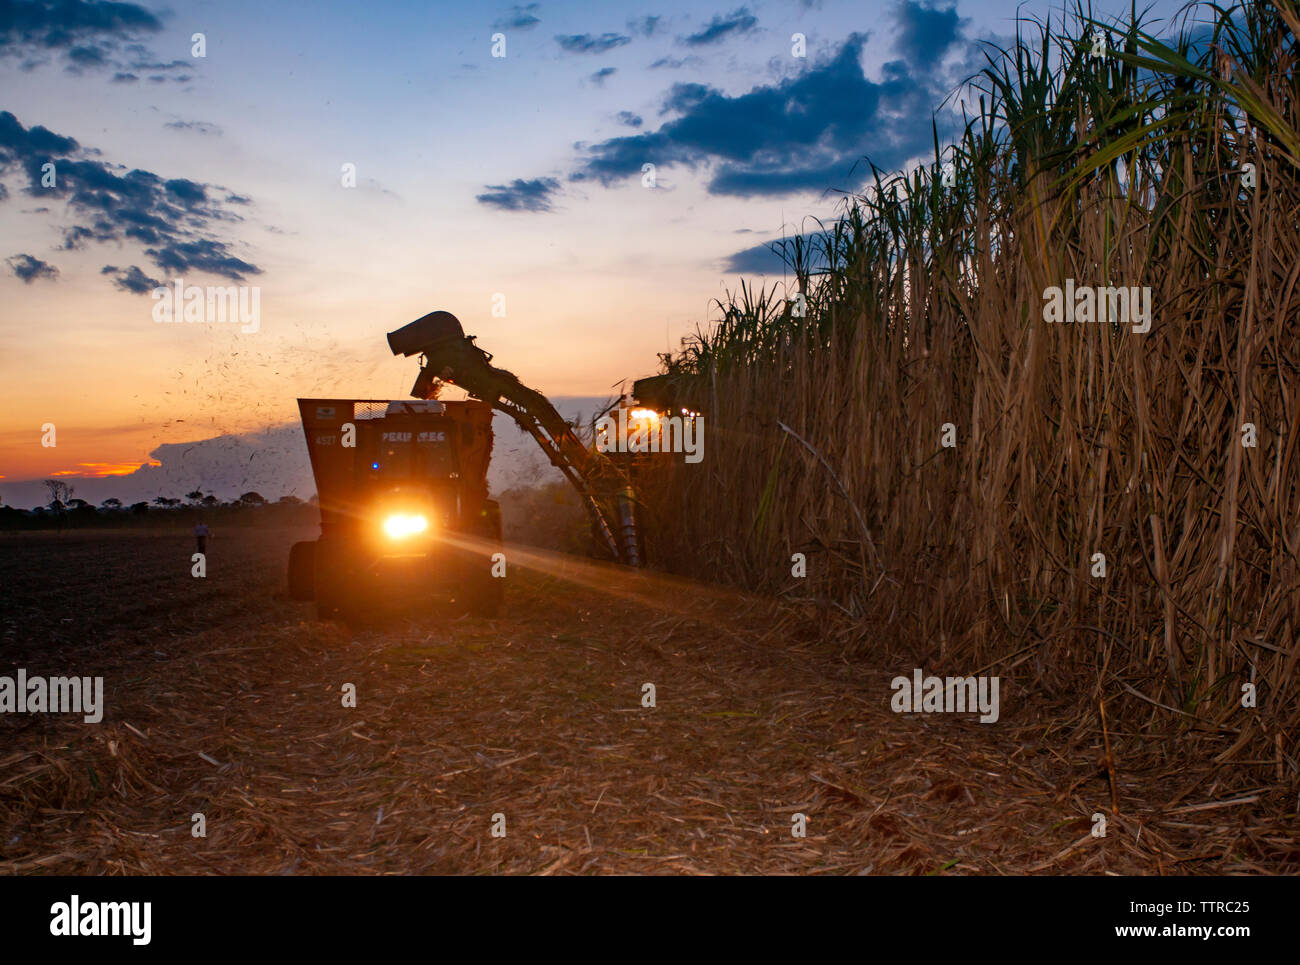 Mietitrice canna da zucchero a farm contro sky durante il tramonto Foto Stock